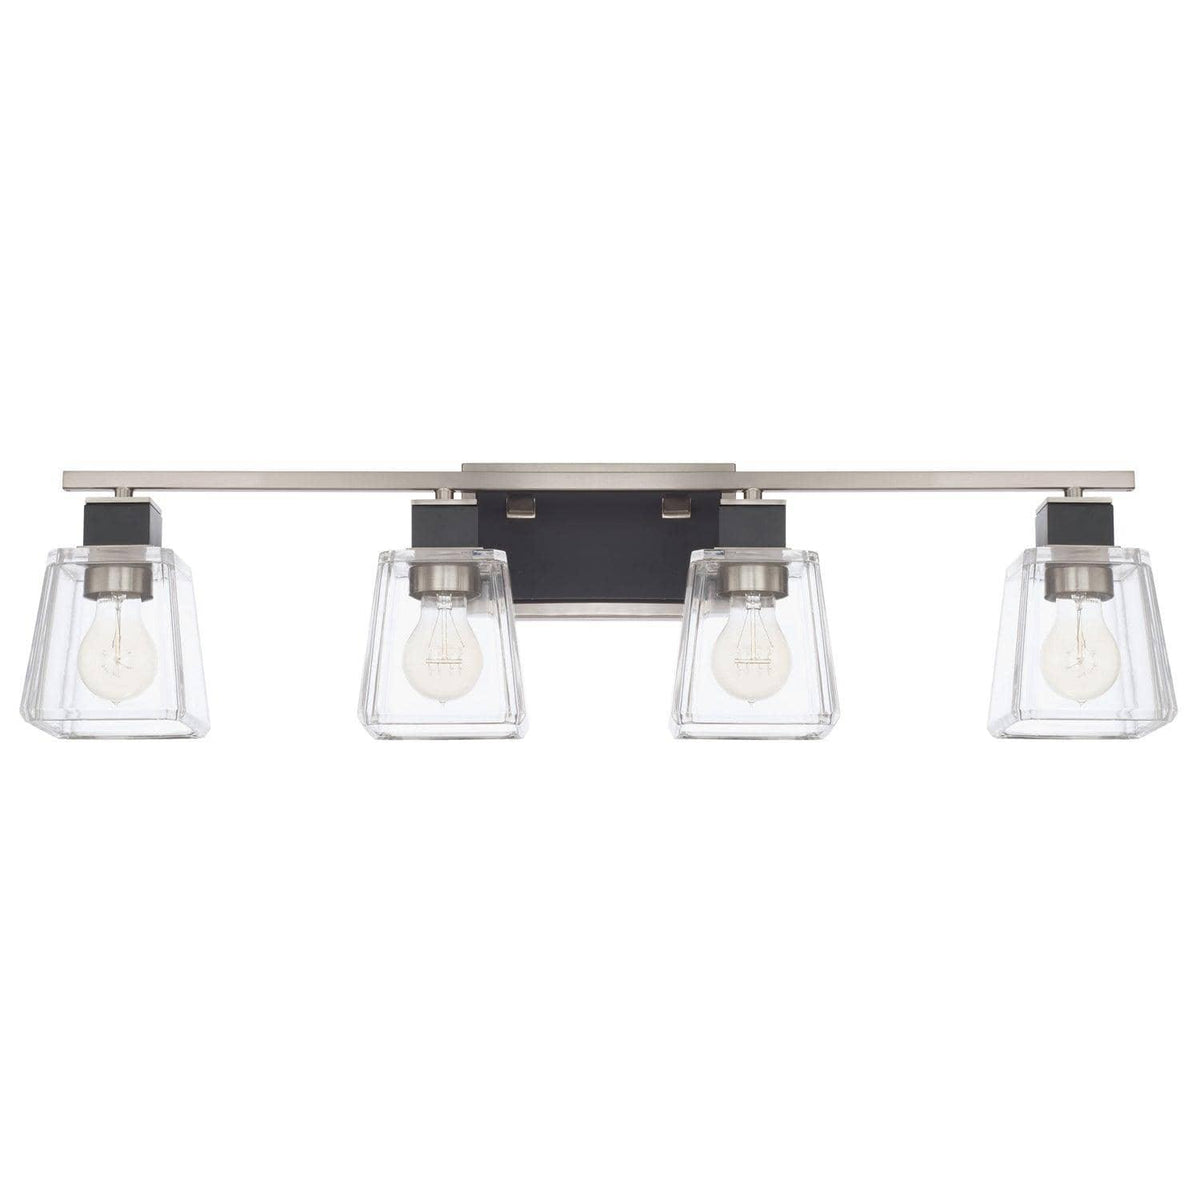 Capital Lighting Fixture Company - Tux Vanity - 125241BT-445 | Montreal Lighting & Hardware